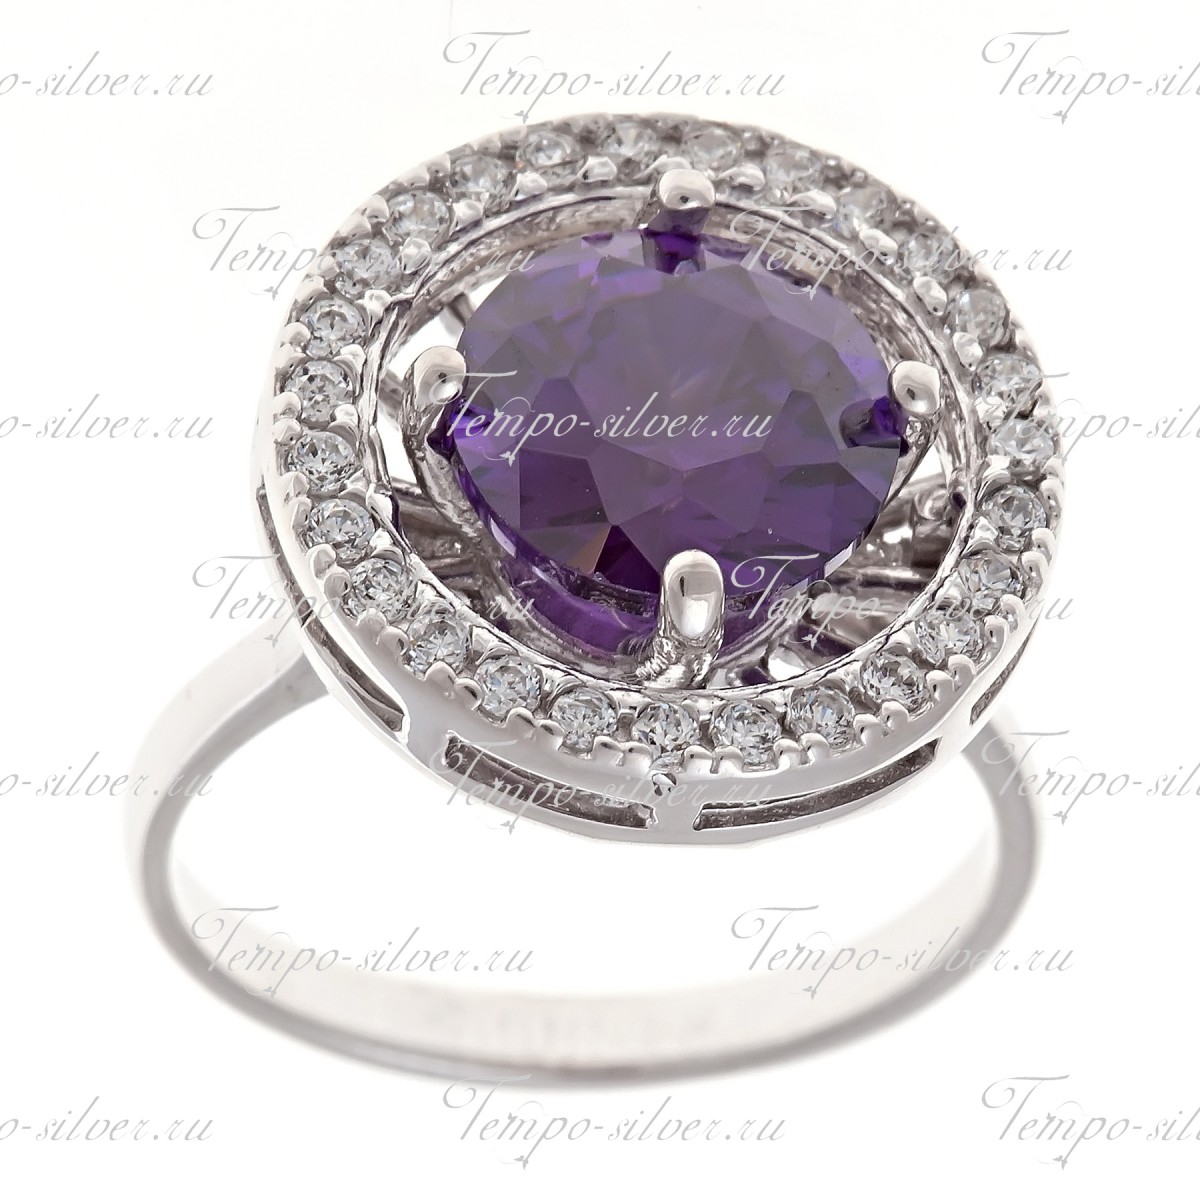 Кольцо серебряное круглой формы с белыми и фиолетовыми камнями